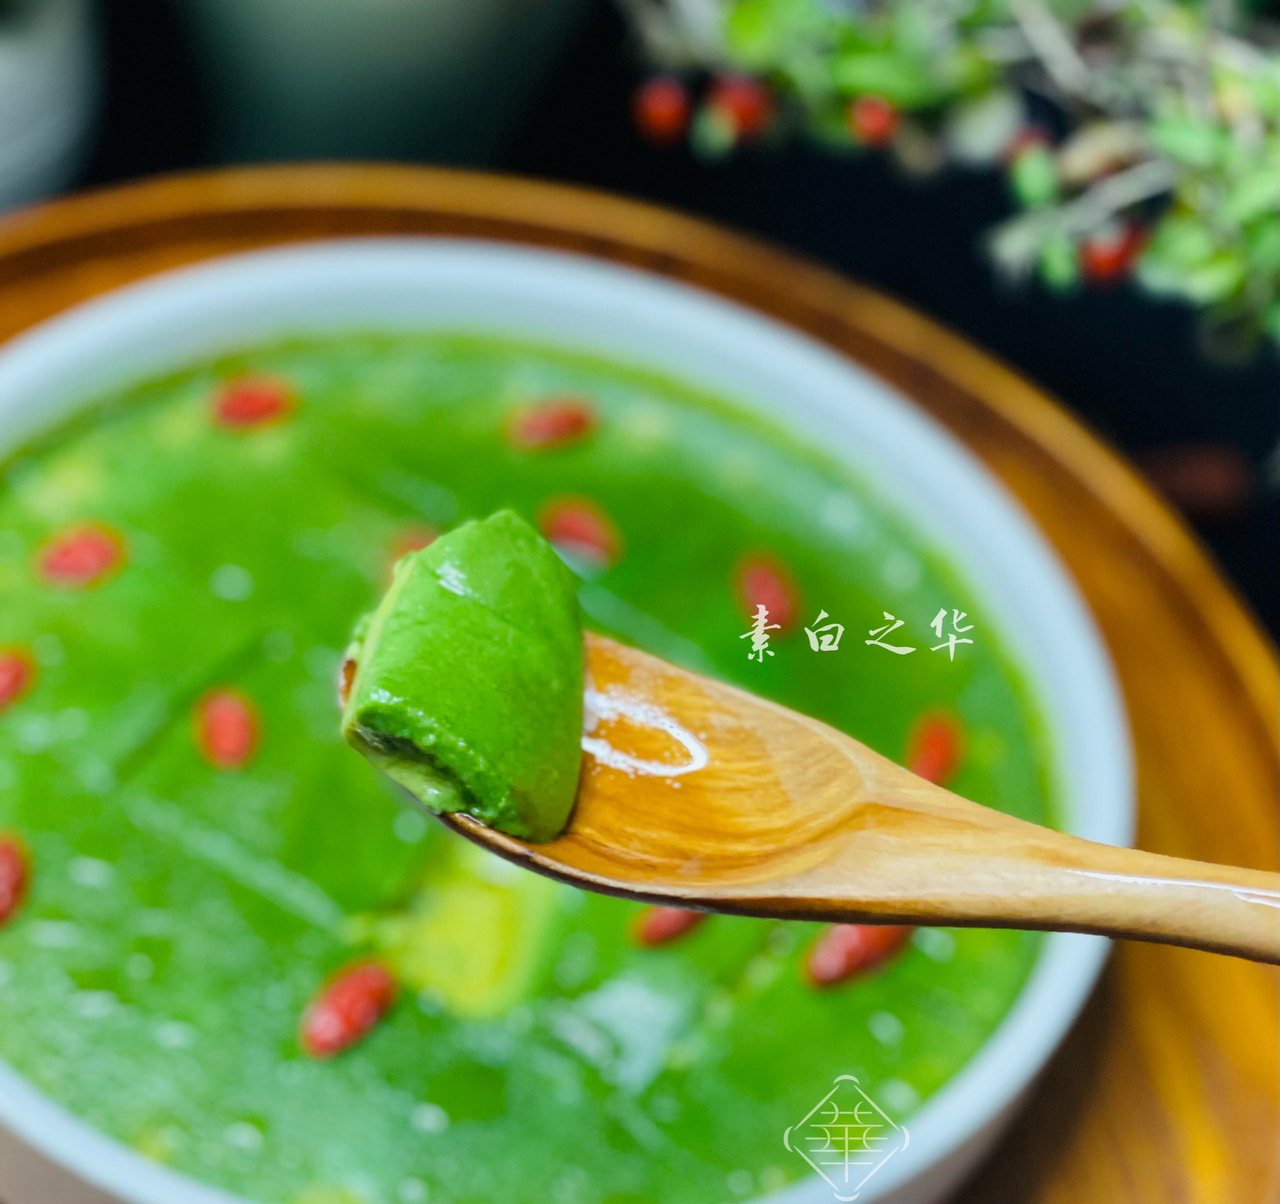 菠菜汁炖蛋 素食的做法